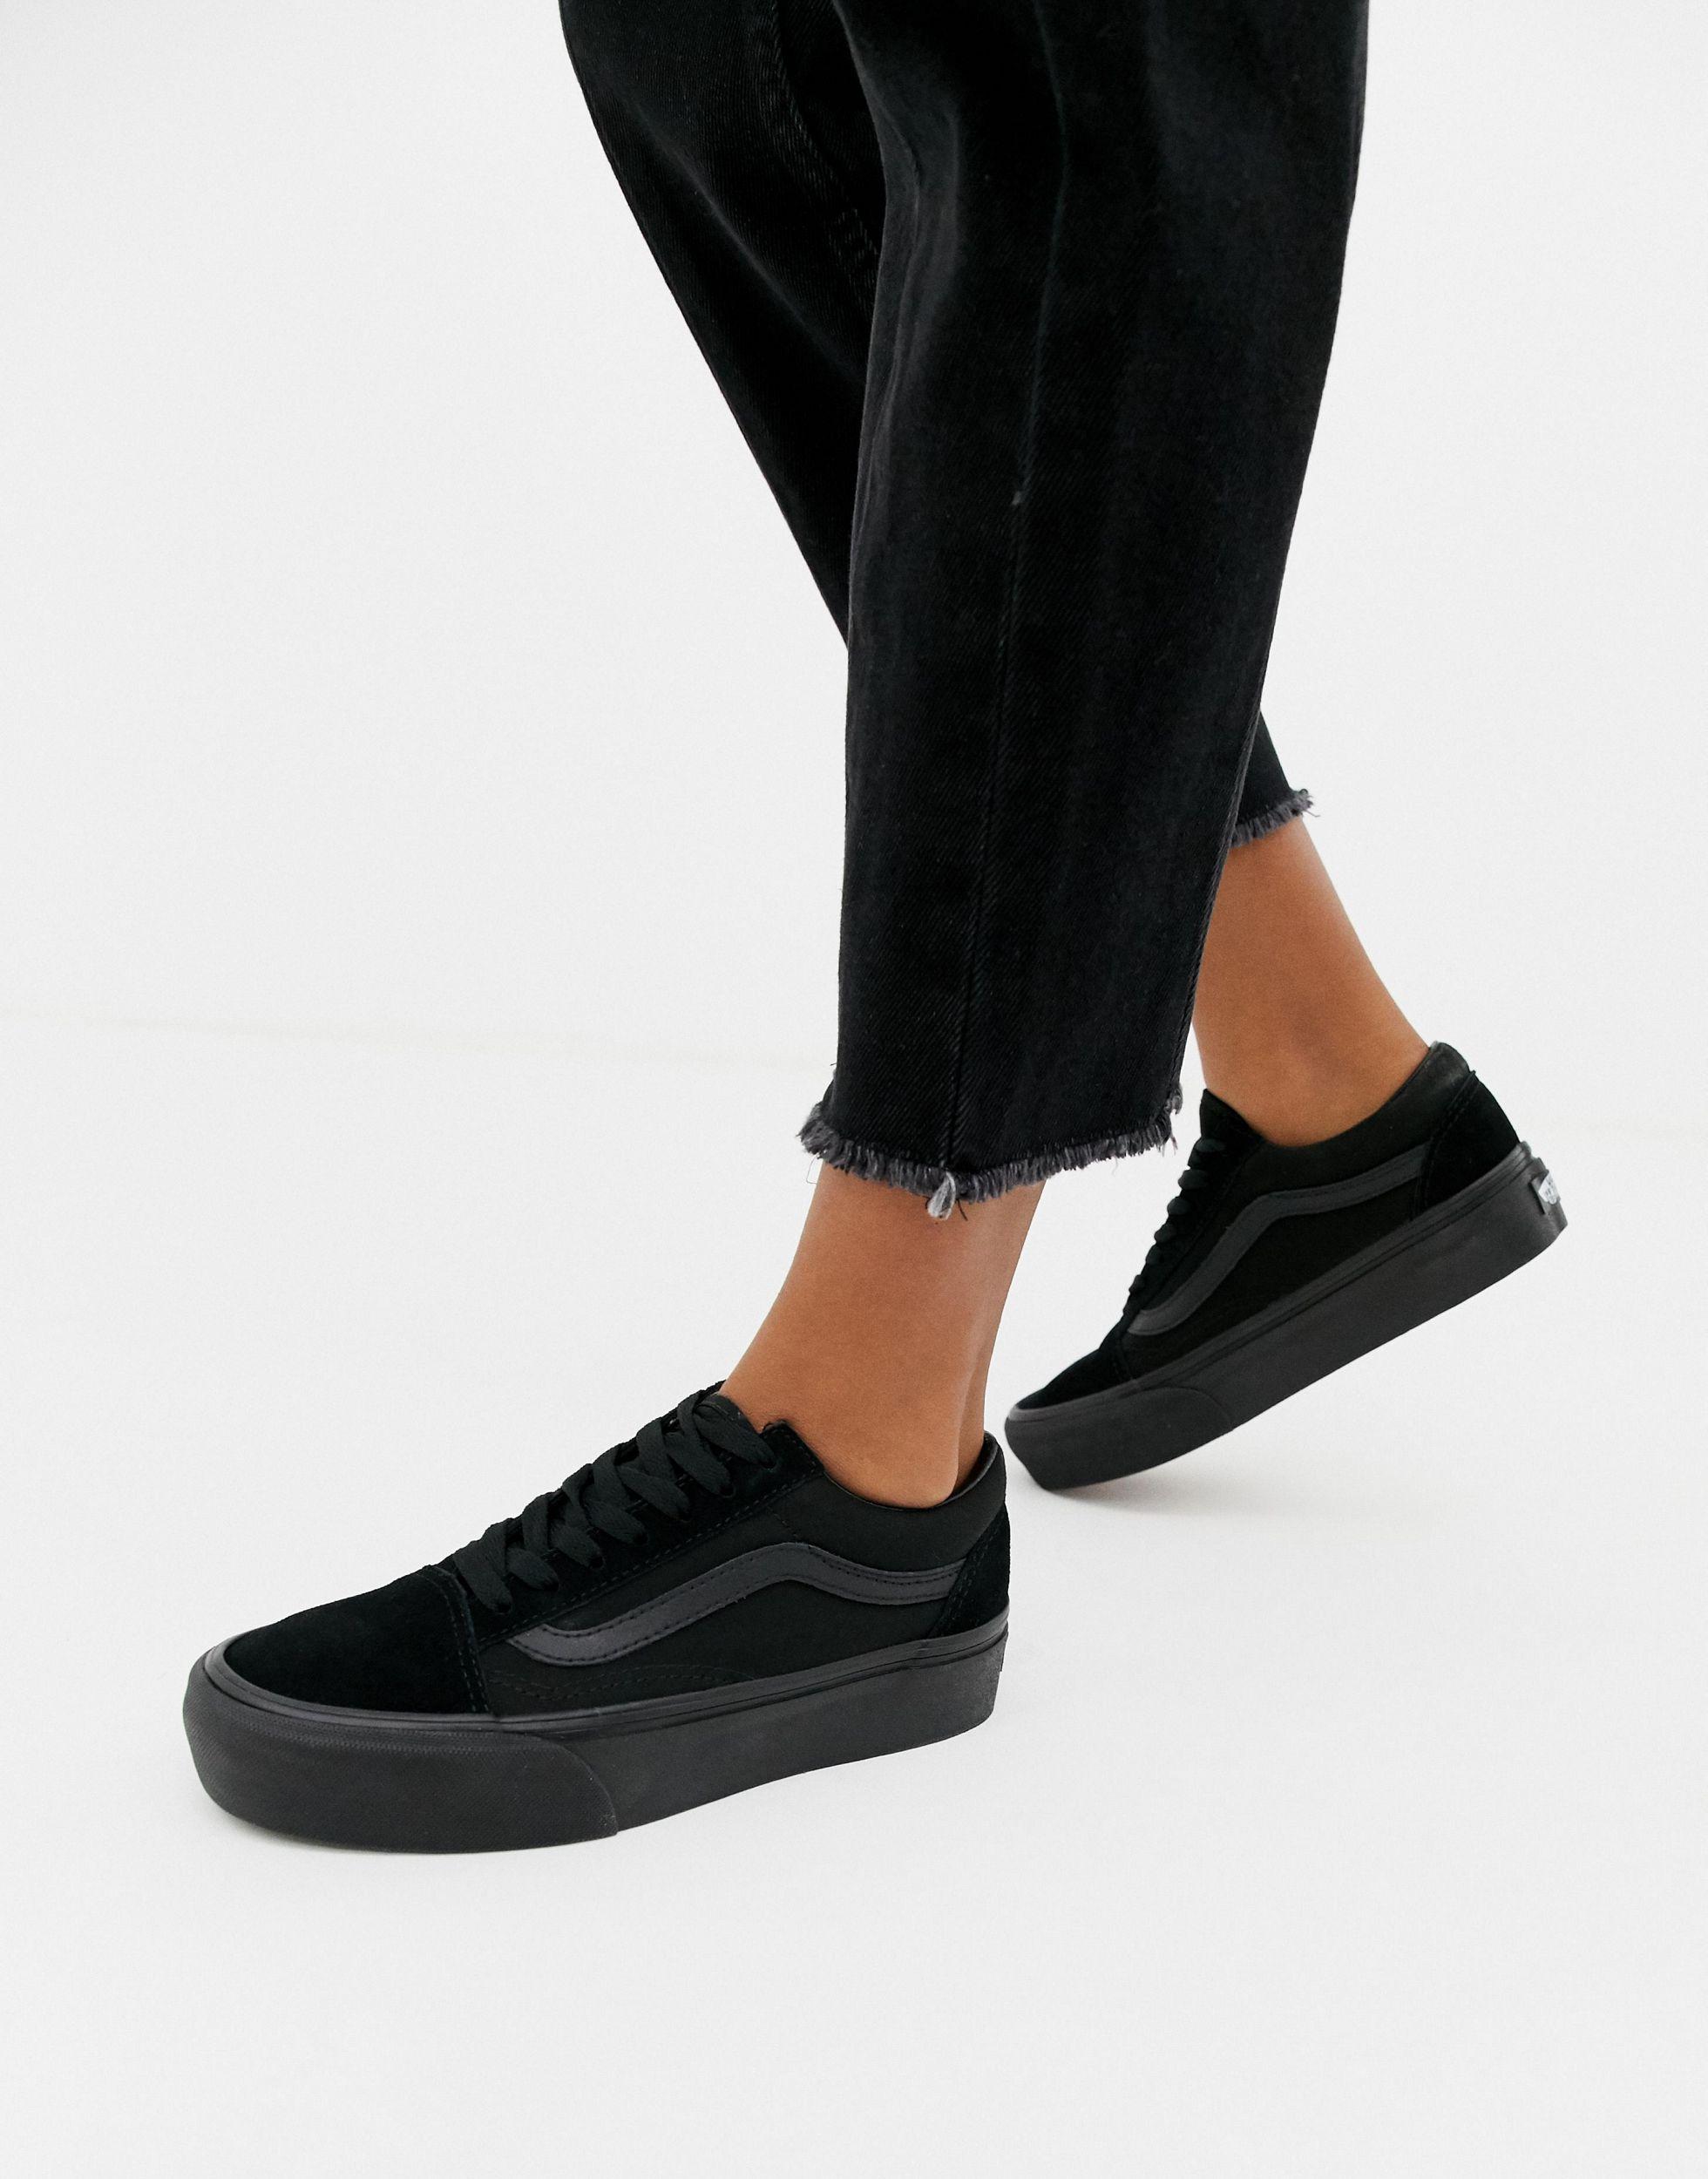 Zapatillas negras con plataforma old skool Vans de Lona de color ... عرض قوي